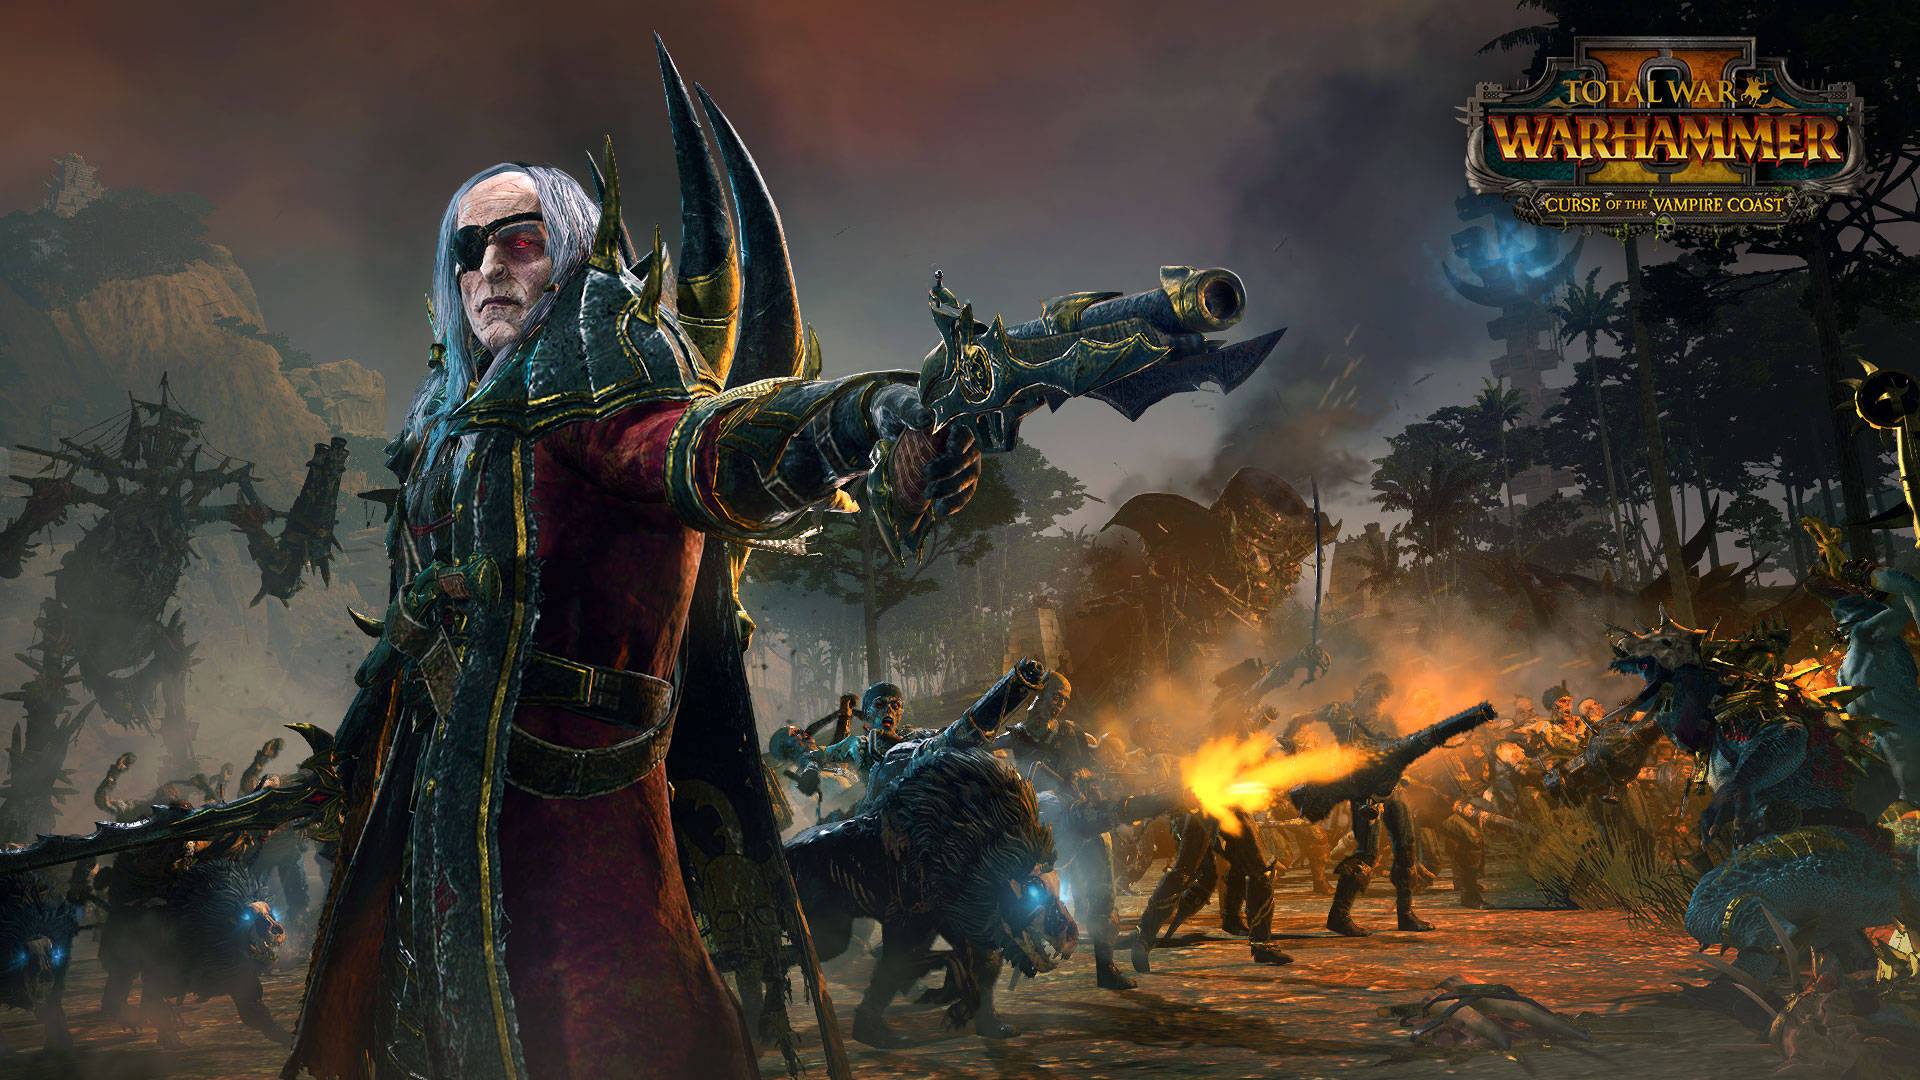 Warhammer Total War Vampire Coast Luthor Background